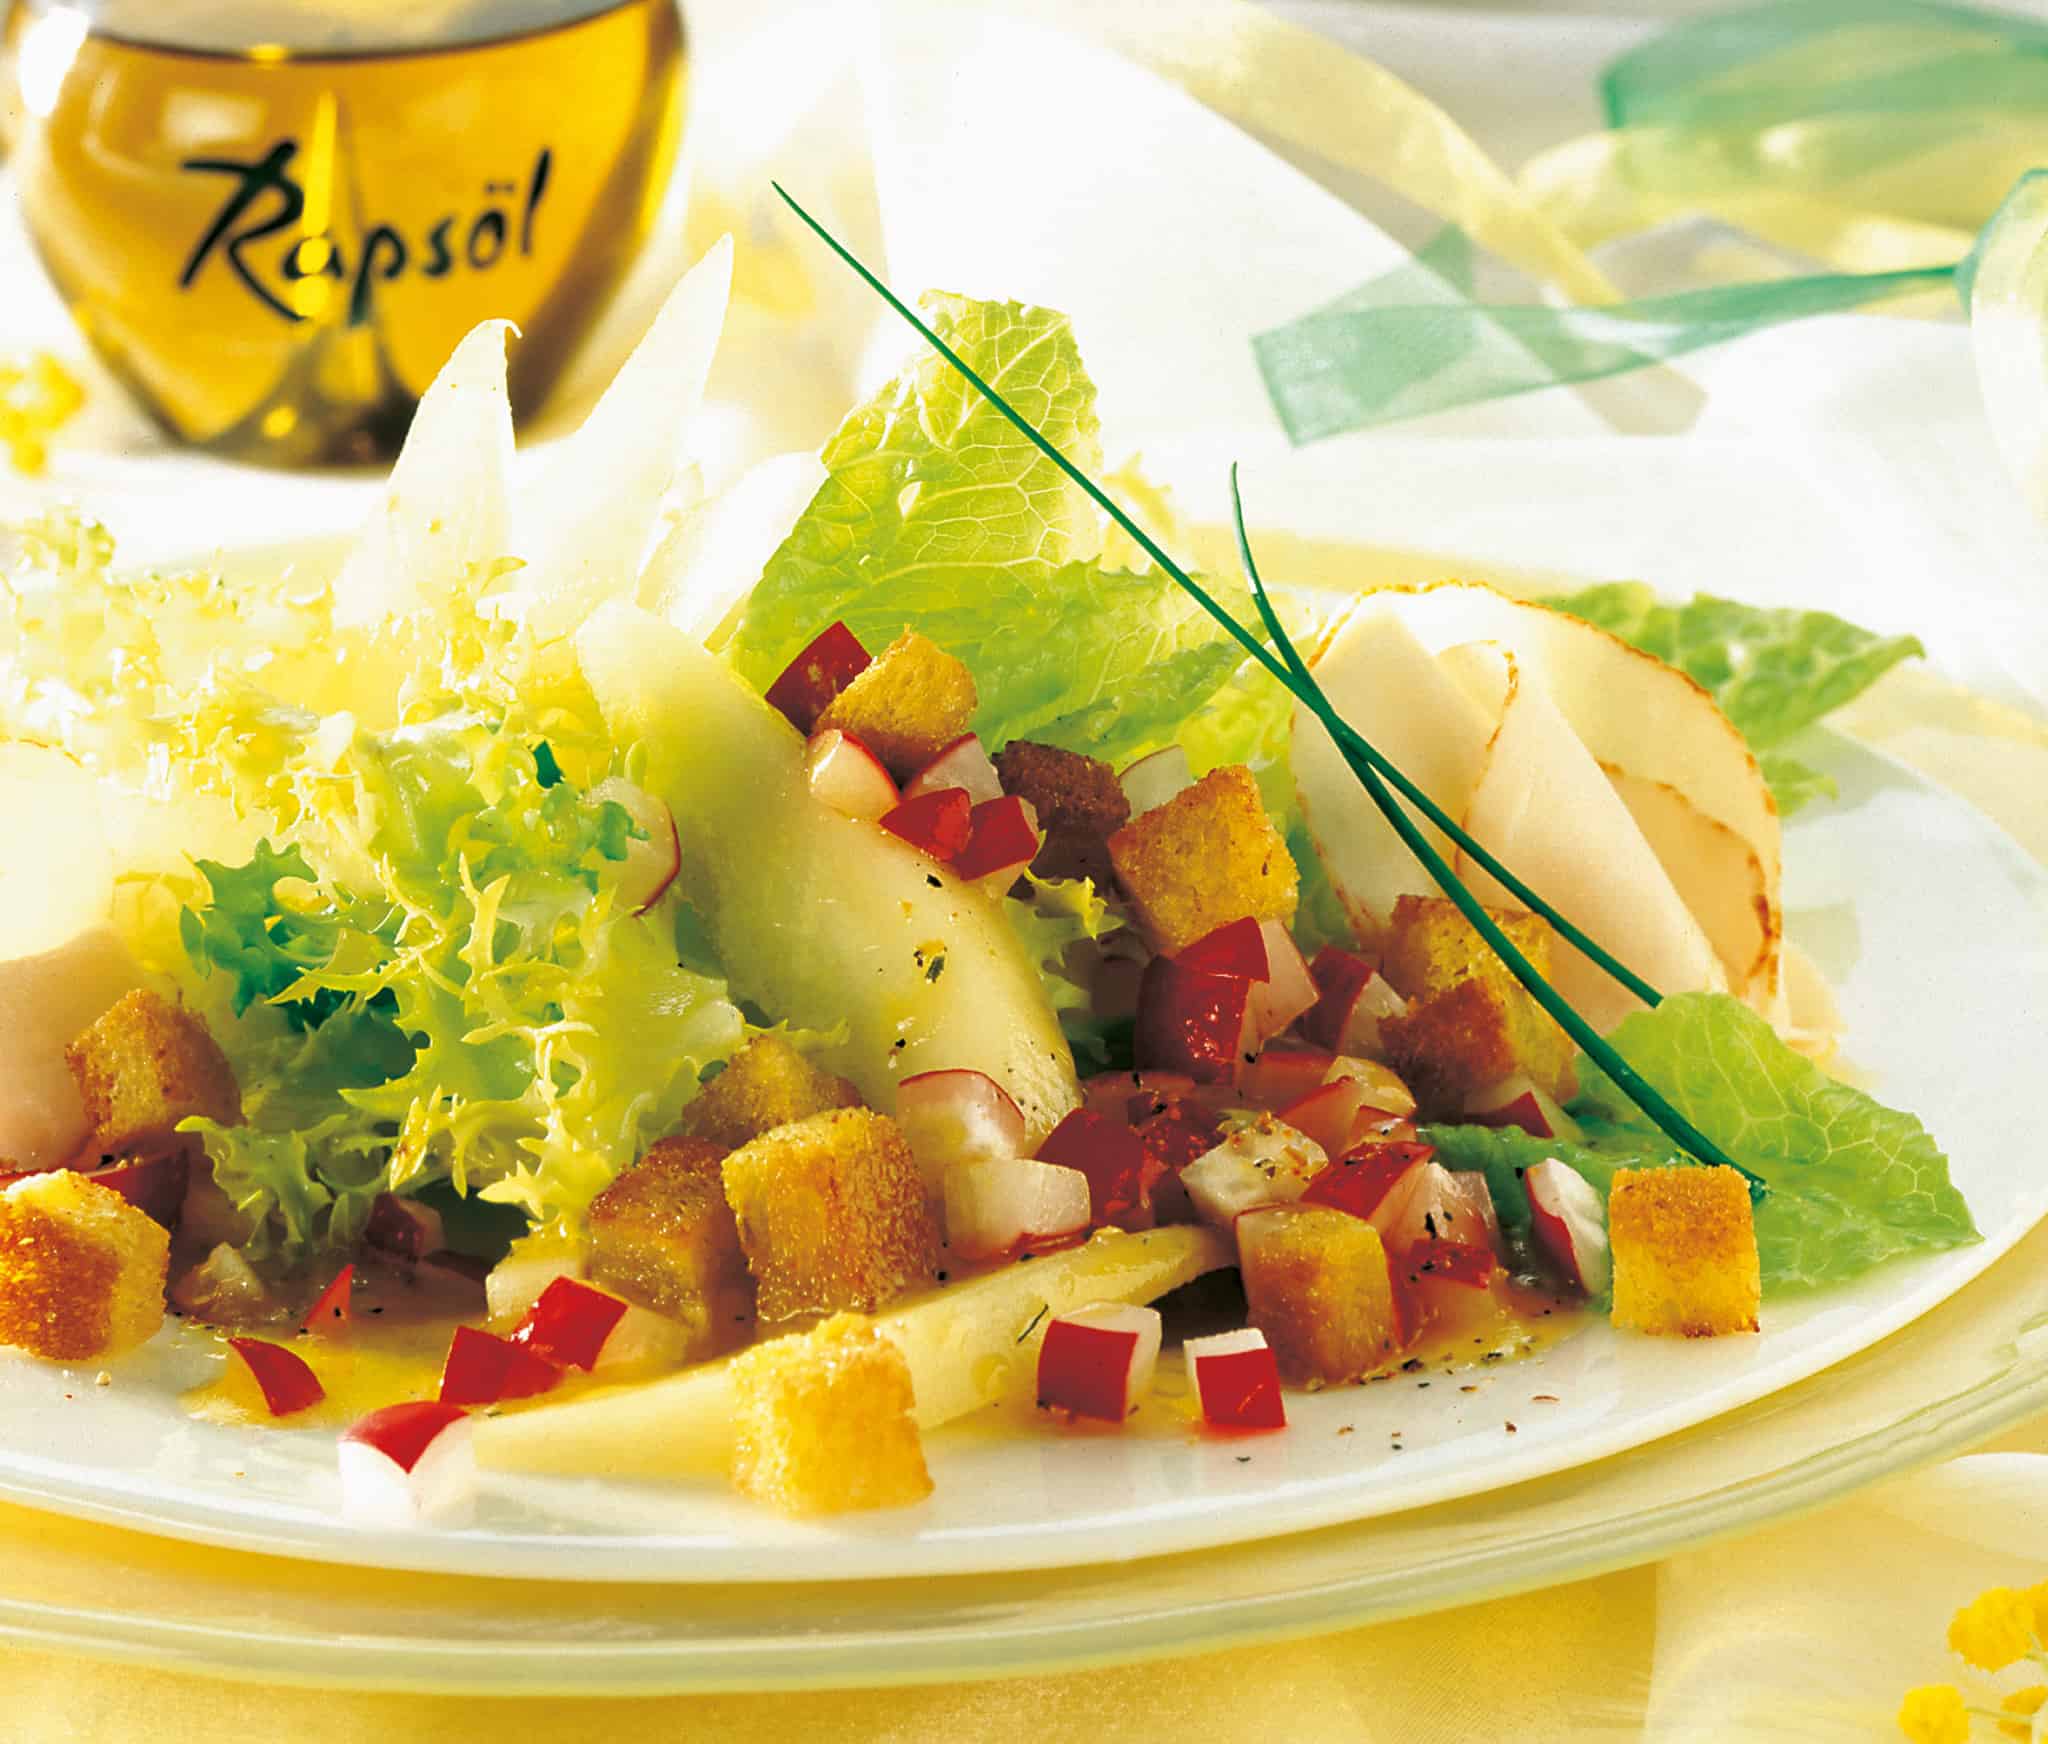 Blattsalat mit Putenbrust und Radieschen › Rügener Rapsöl